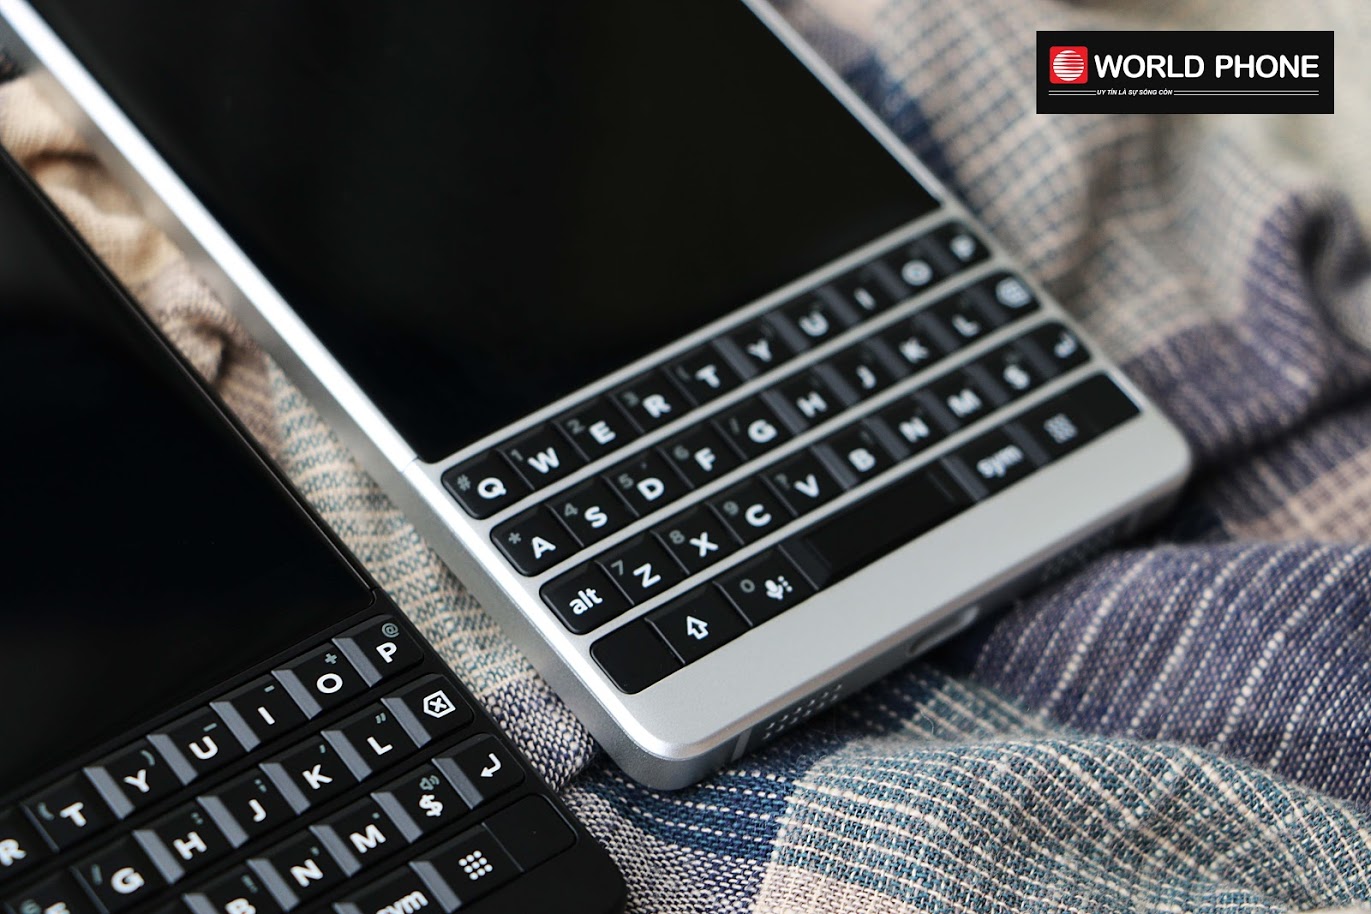  BlackBerry KEY2 được trang bị thêm lớp bảo mật dưới phần cứng 